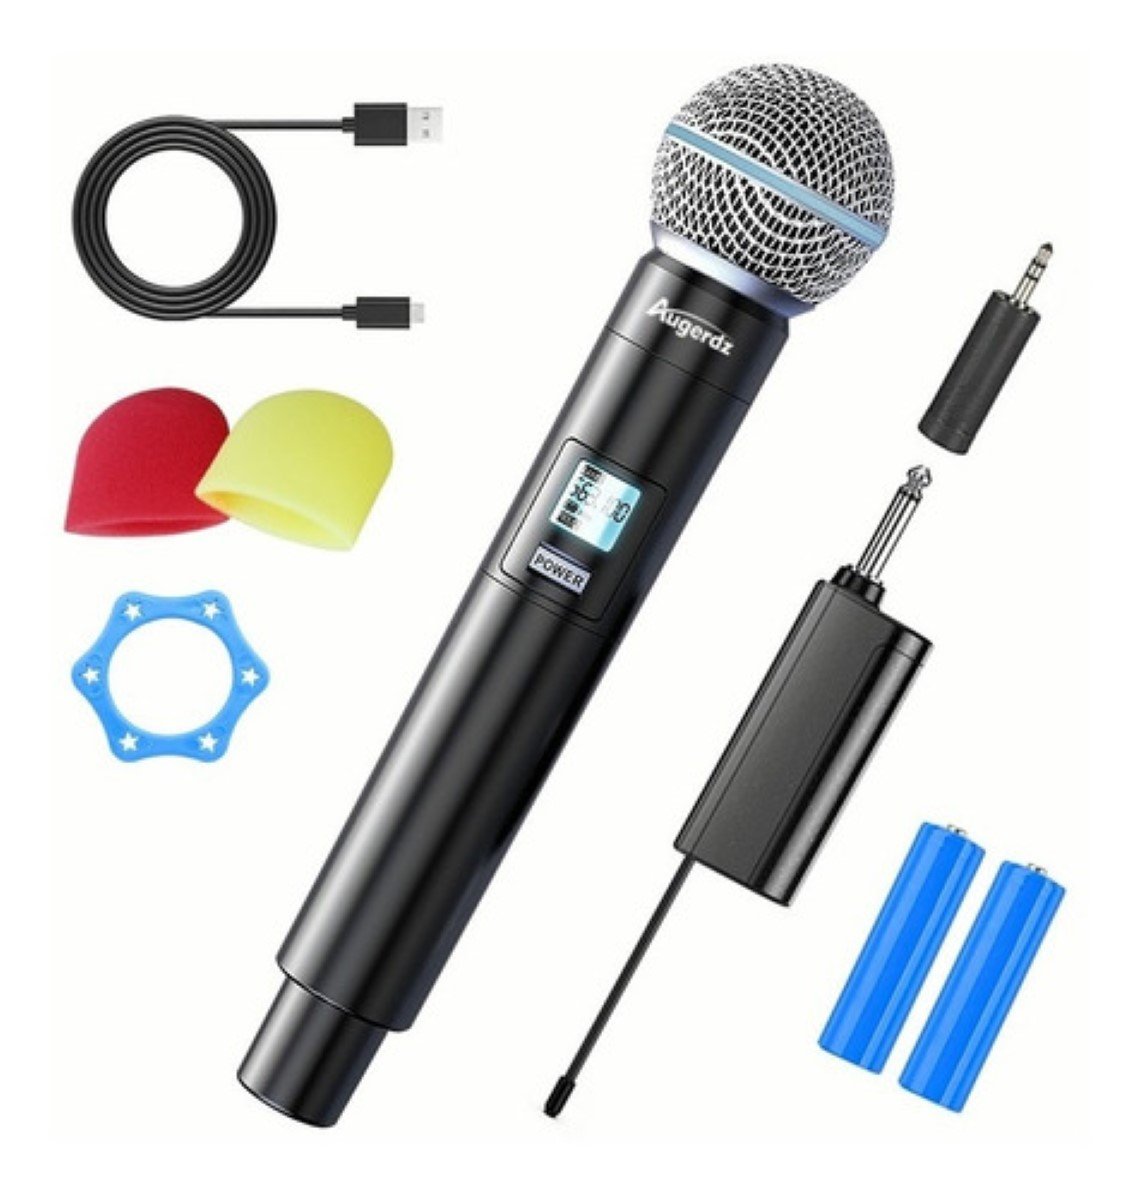 Amplificador de voz con micrófono, recargable de 2200 mAh – Tienda